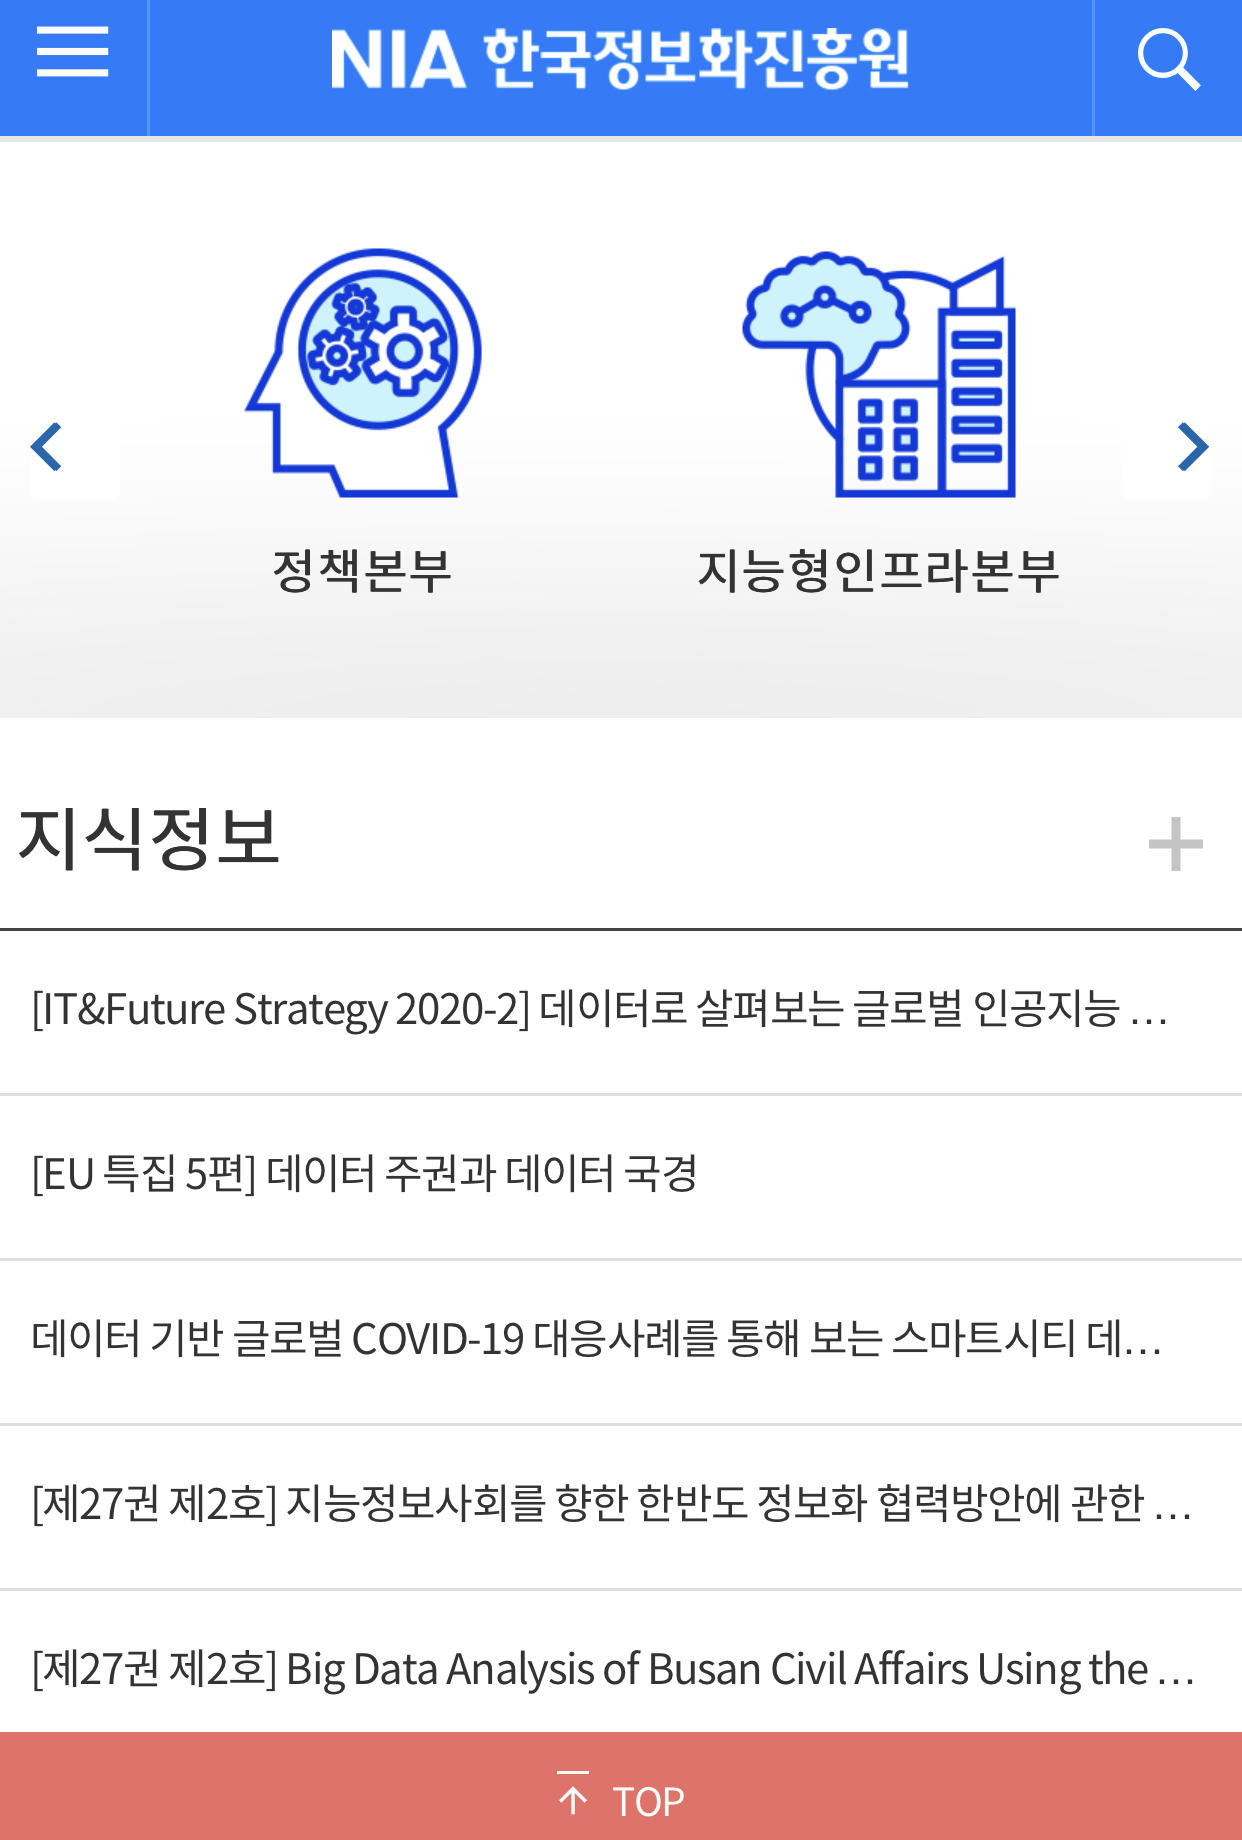 한국정보화진흥원 모바일웹 스크릿샷